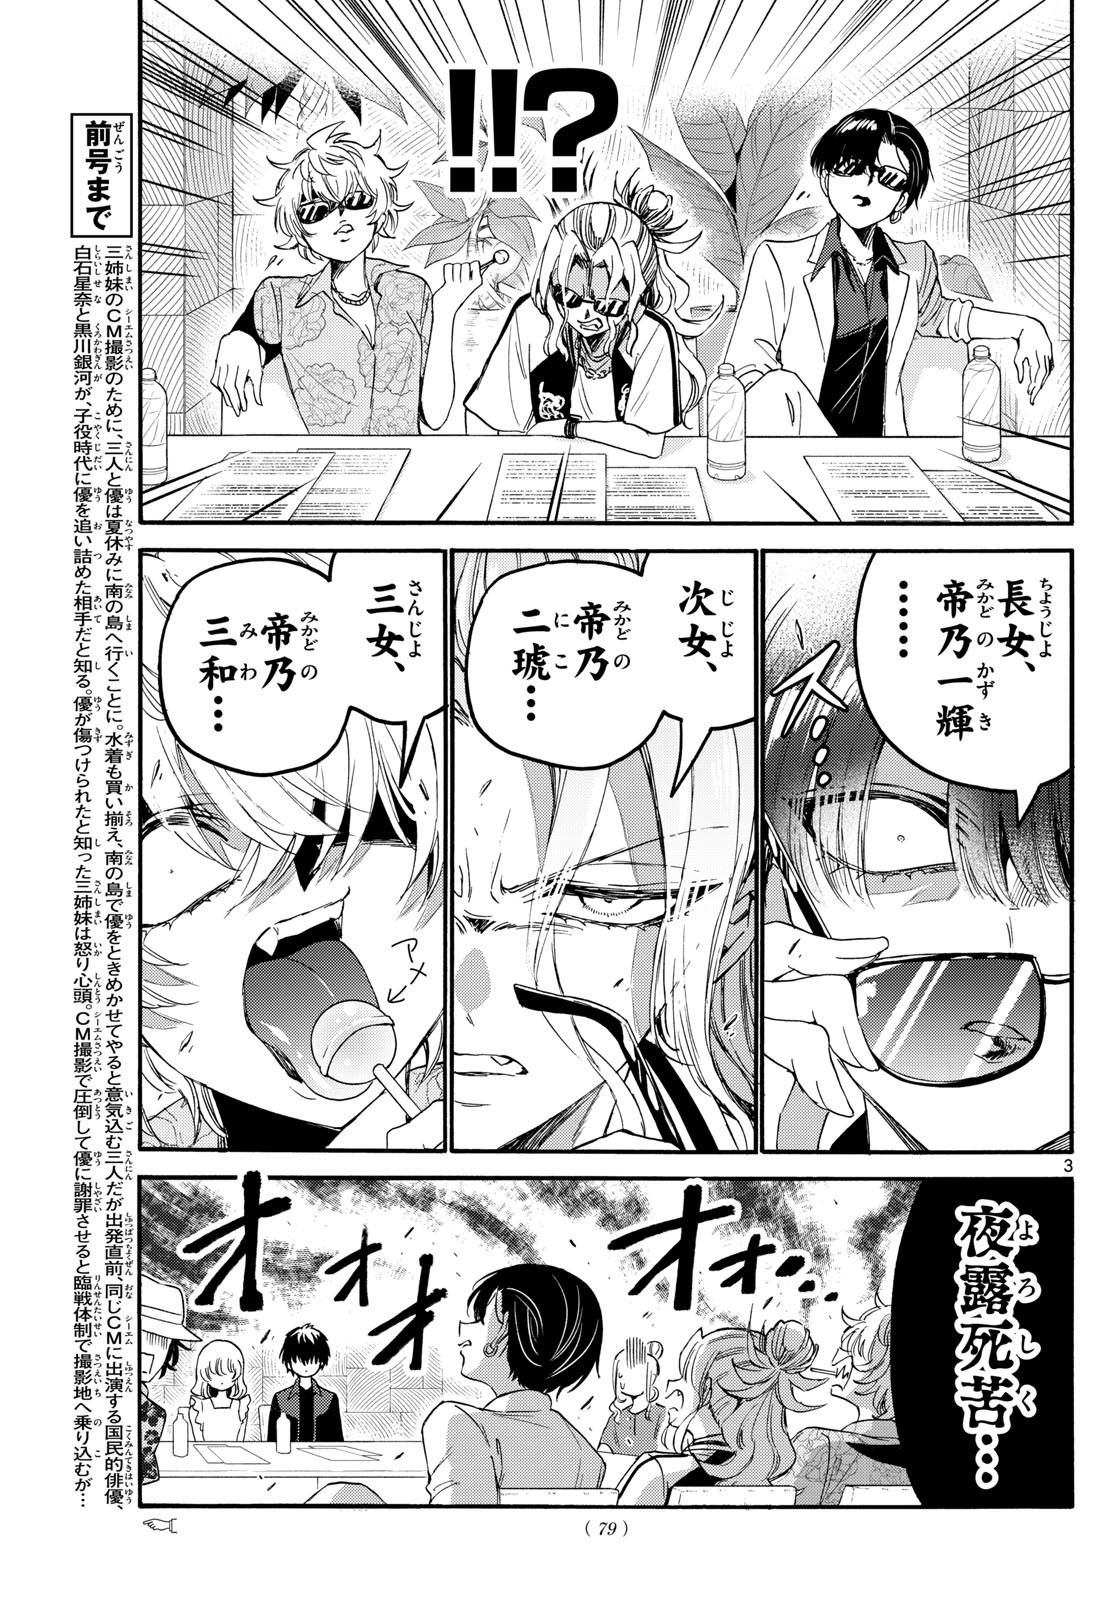 Mikadono Sanshimai wa Angai, Choroi. - Chapter 083 - Page 3